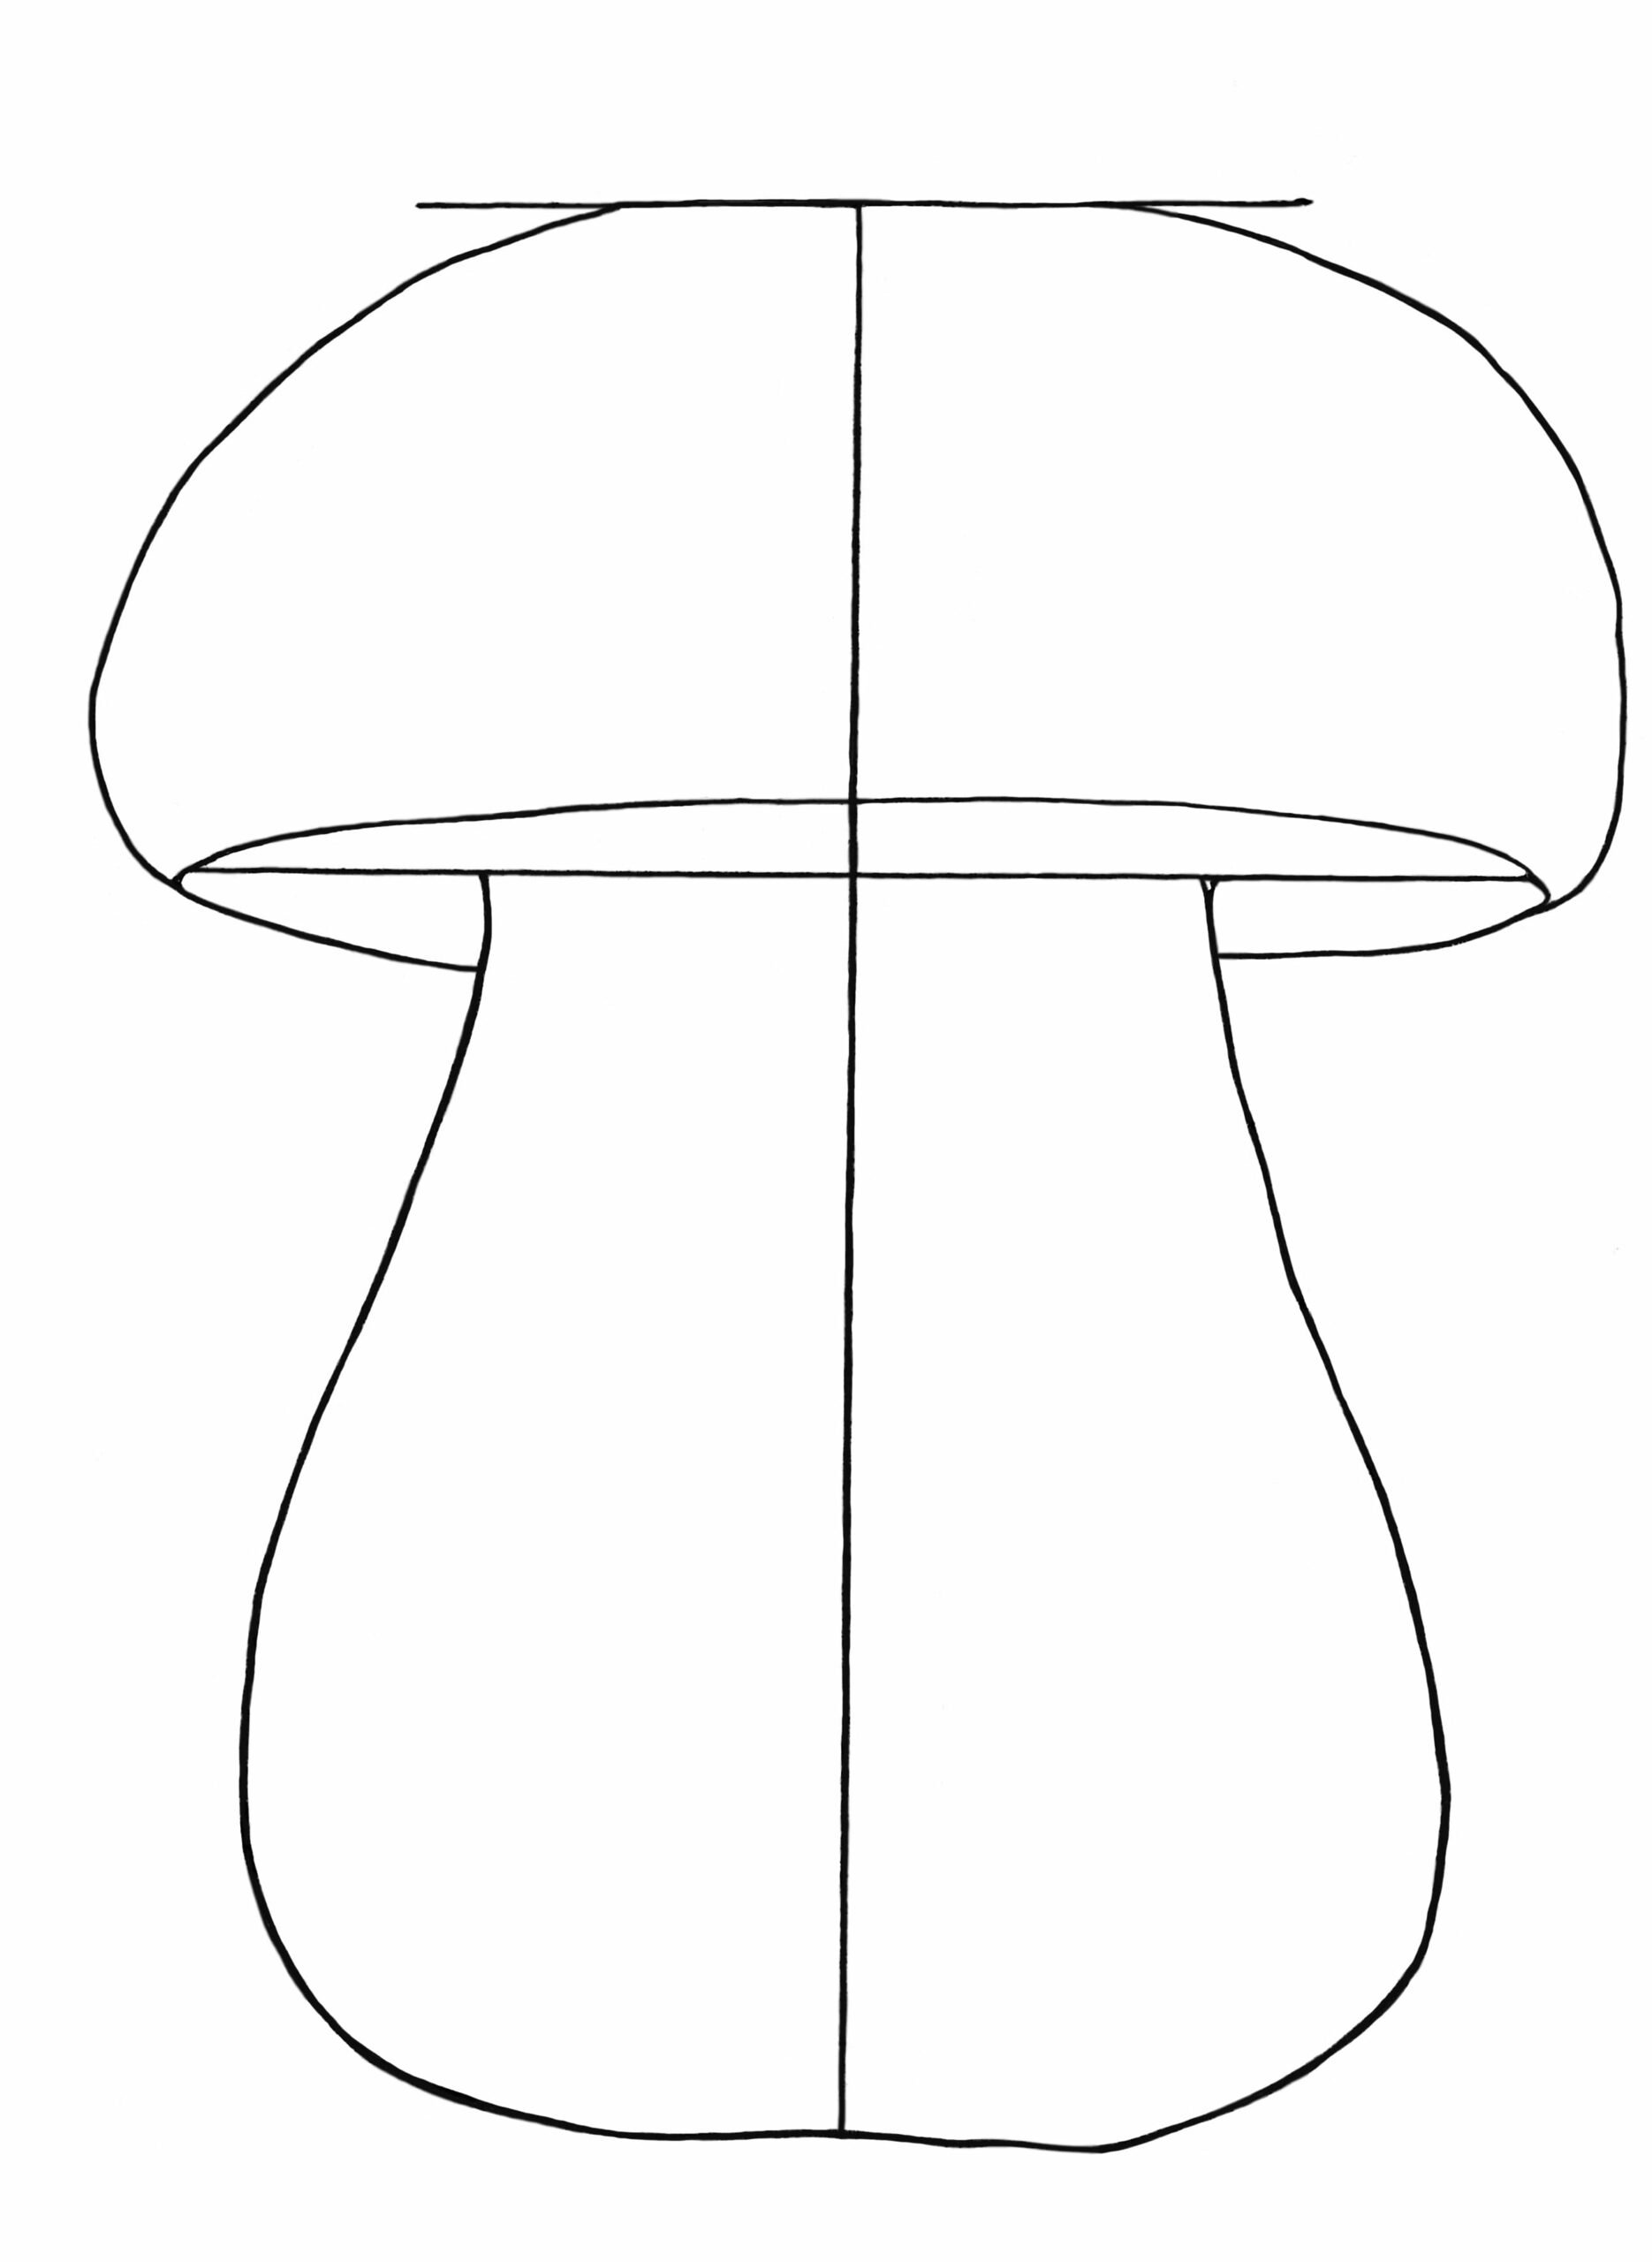 Грибы поэтапно. Поэтапное рисование гриба. Трафареты грибов. Грибочки для рисования. Рисование с детьми грибы.